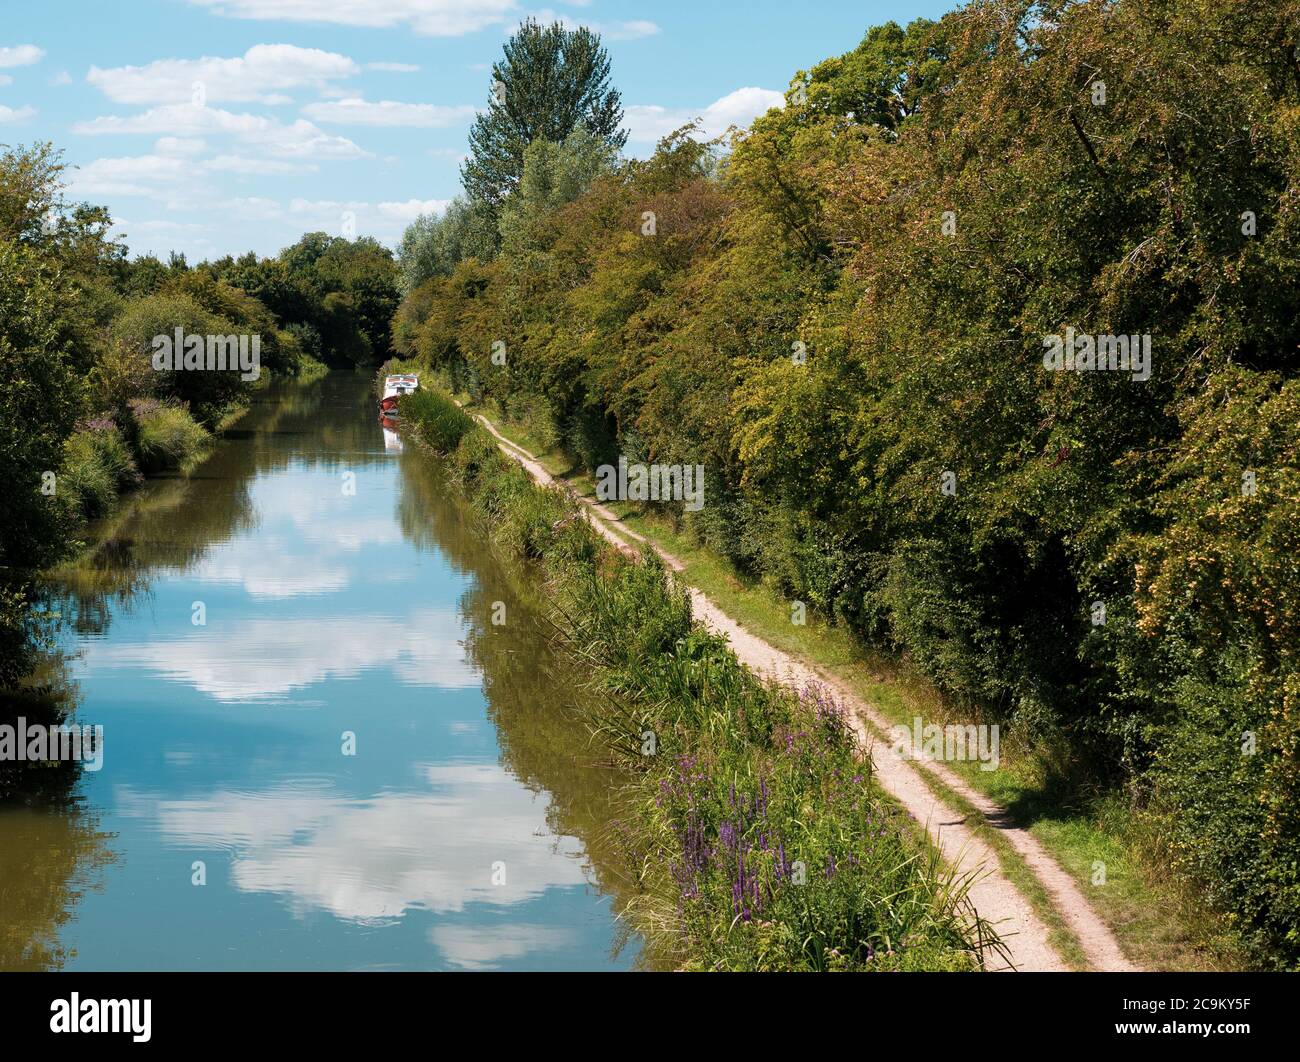 Photographie de paysage de Kennett et Avon Canal, Kintbury, Hungerford, Berkshire, Angleterre, Royaume-Uni, GB. Banque D'Images